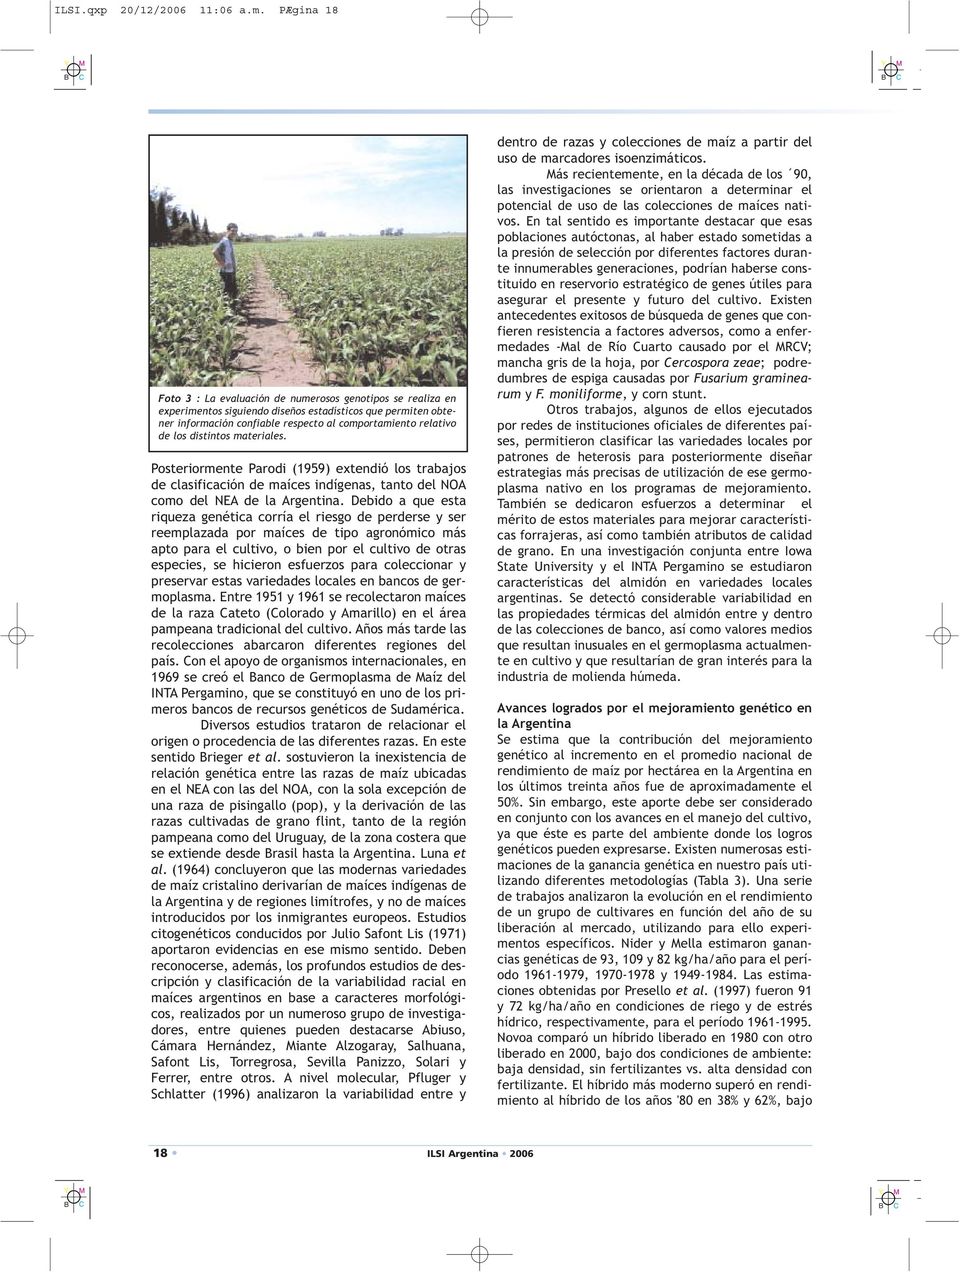 distintos materiales. Posteriormente Parodi (1959) extendió los trabajos de clasificación de maíces indígenas, tanto del NOA como del NEA de la Argentina.